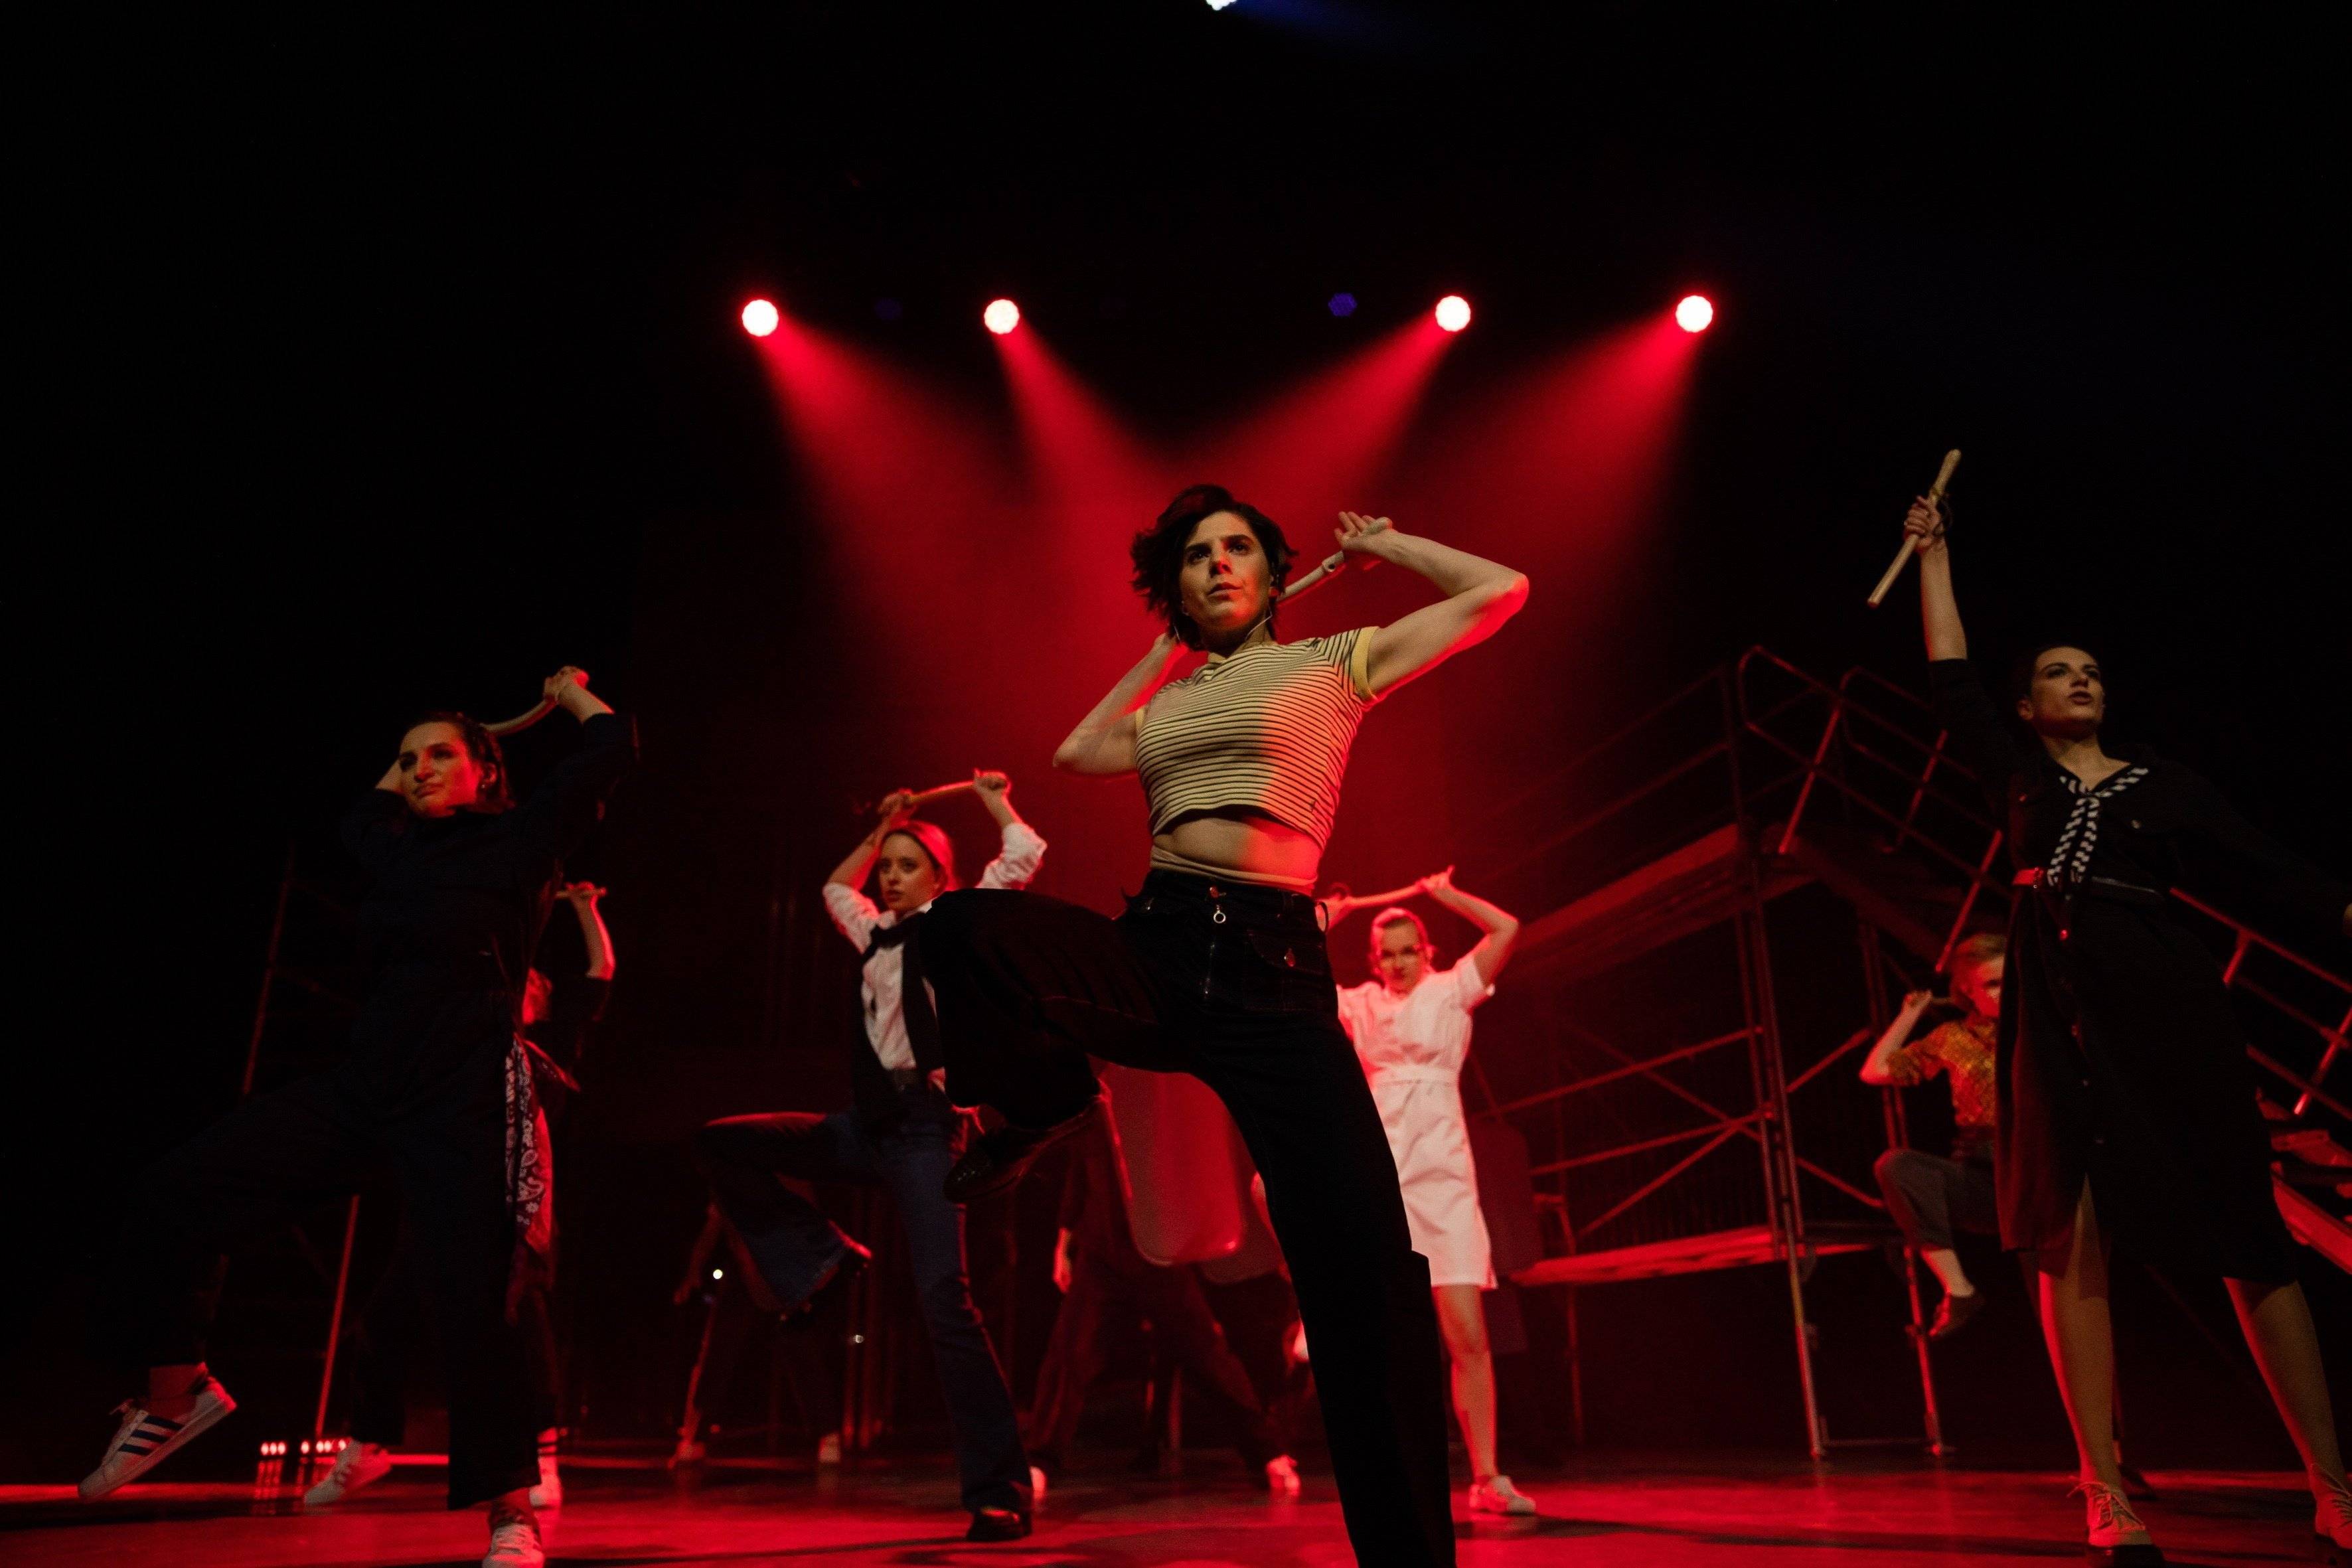 cena z musicalu „1989” - aktorki tańczą na tle snopów czerwonego światła.